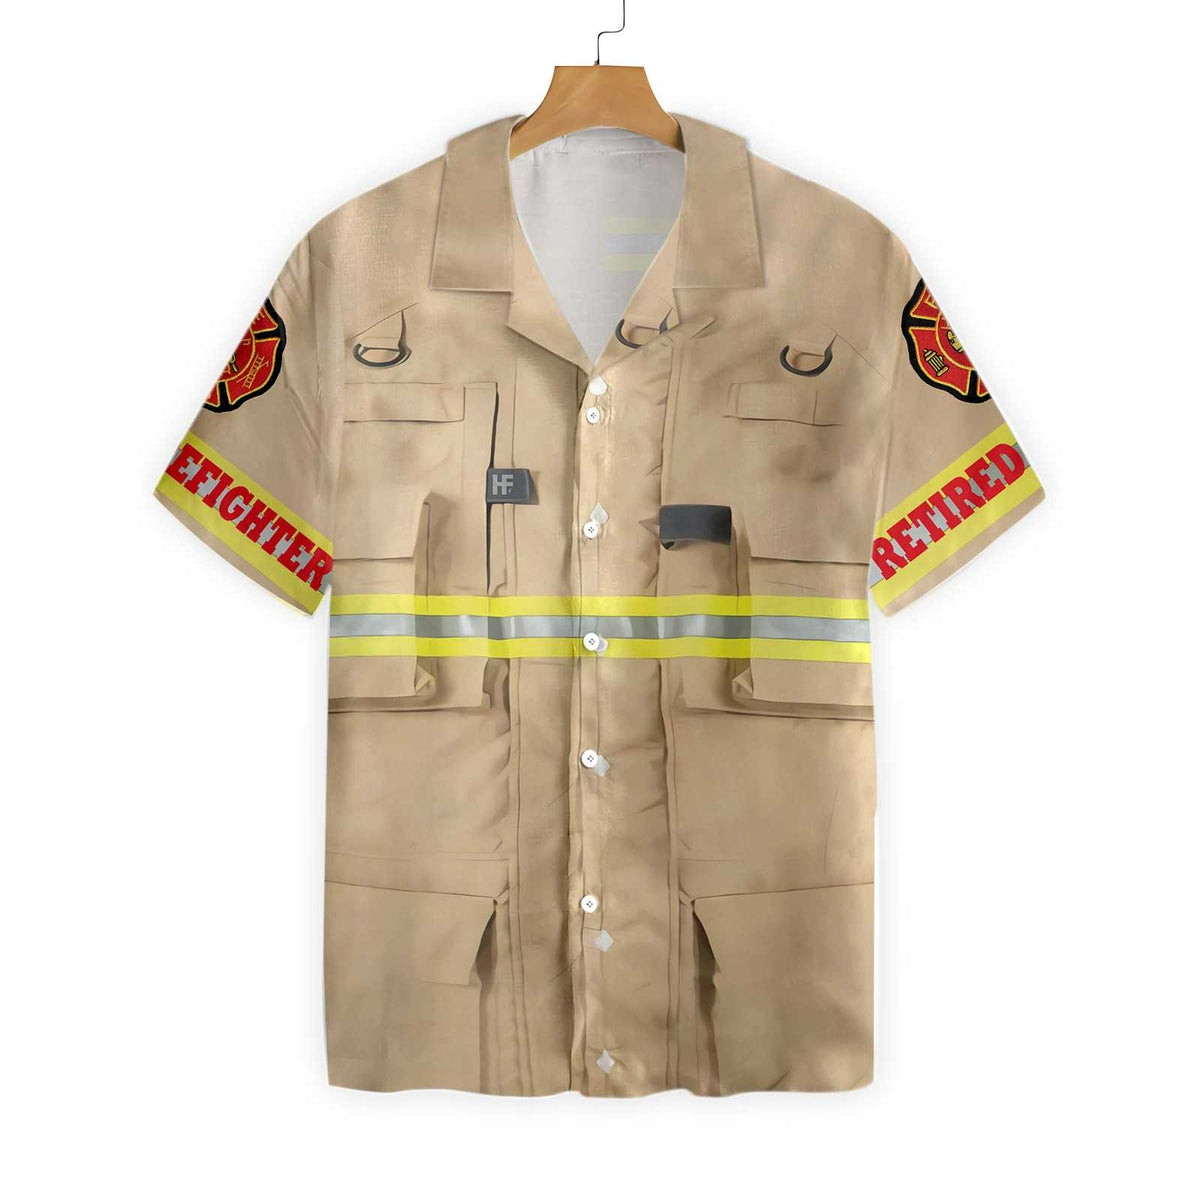 Proud Retired Firefighter Hawaiian Shirt Cream Life Vest Work Uniform Fire Dept Logo Firefighter Shirt For Men